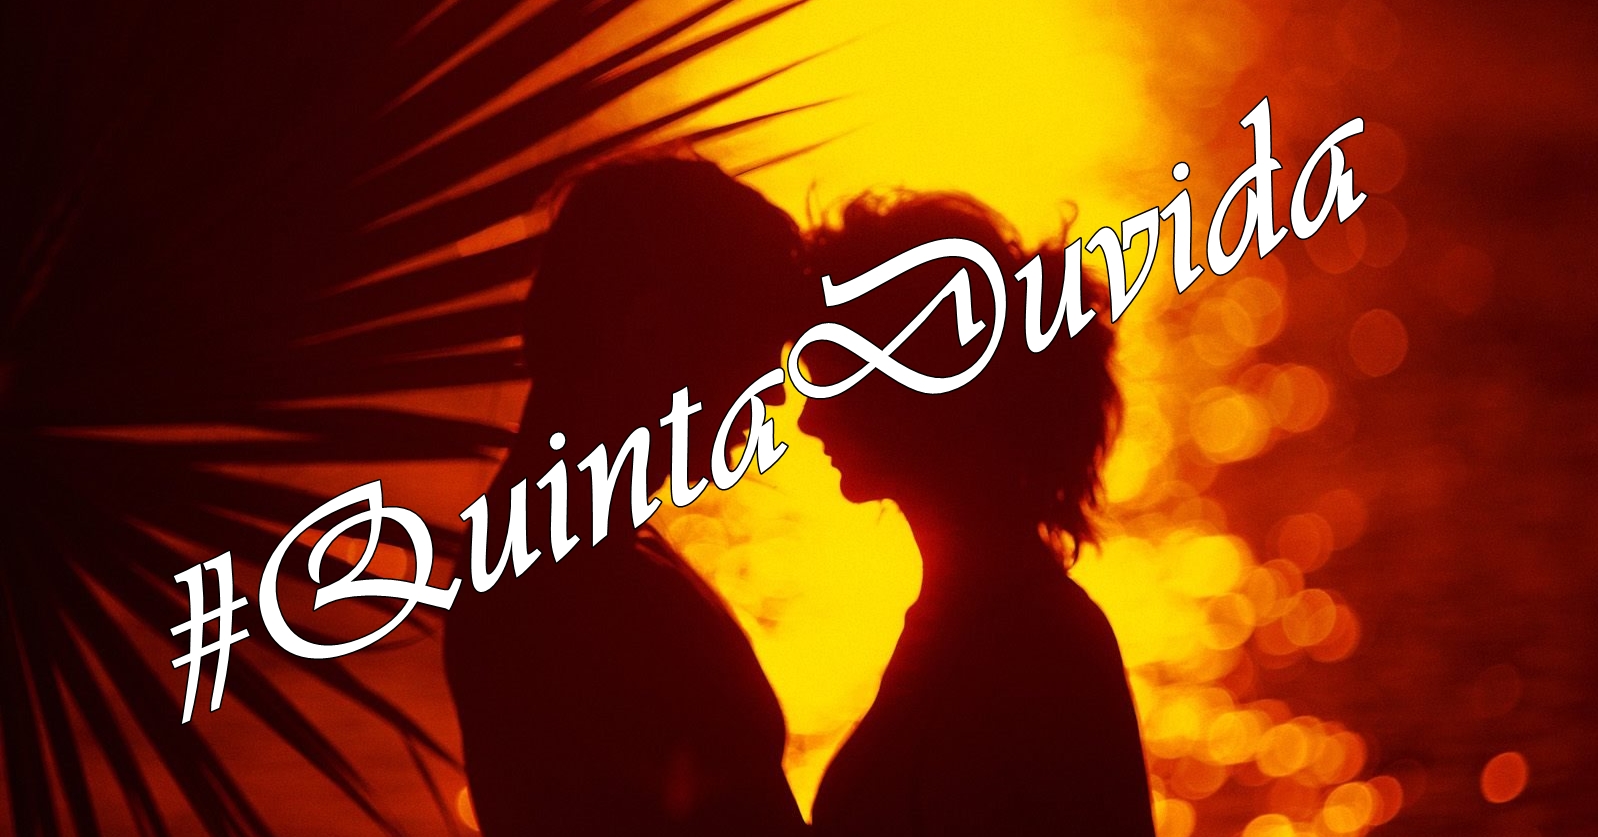 #QuintaDuvida